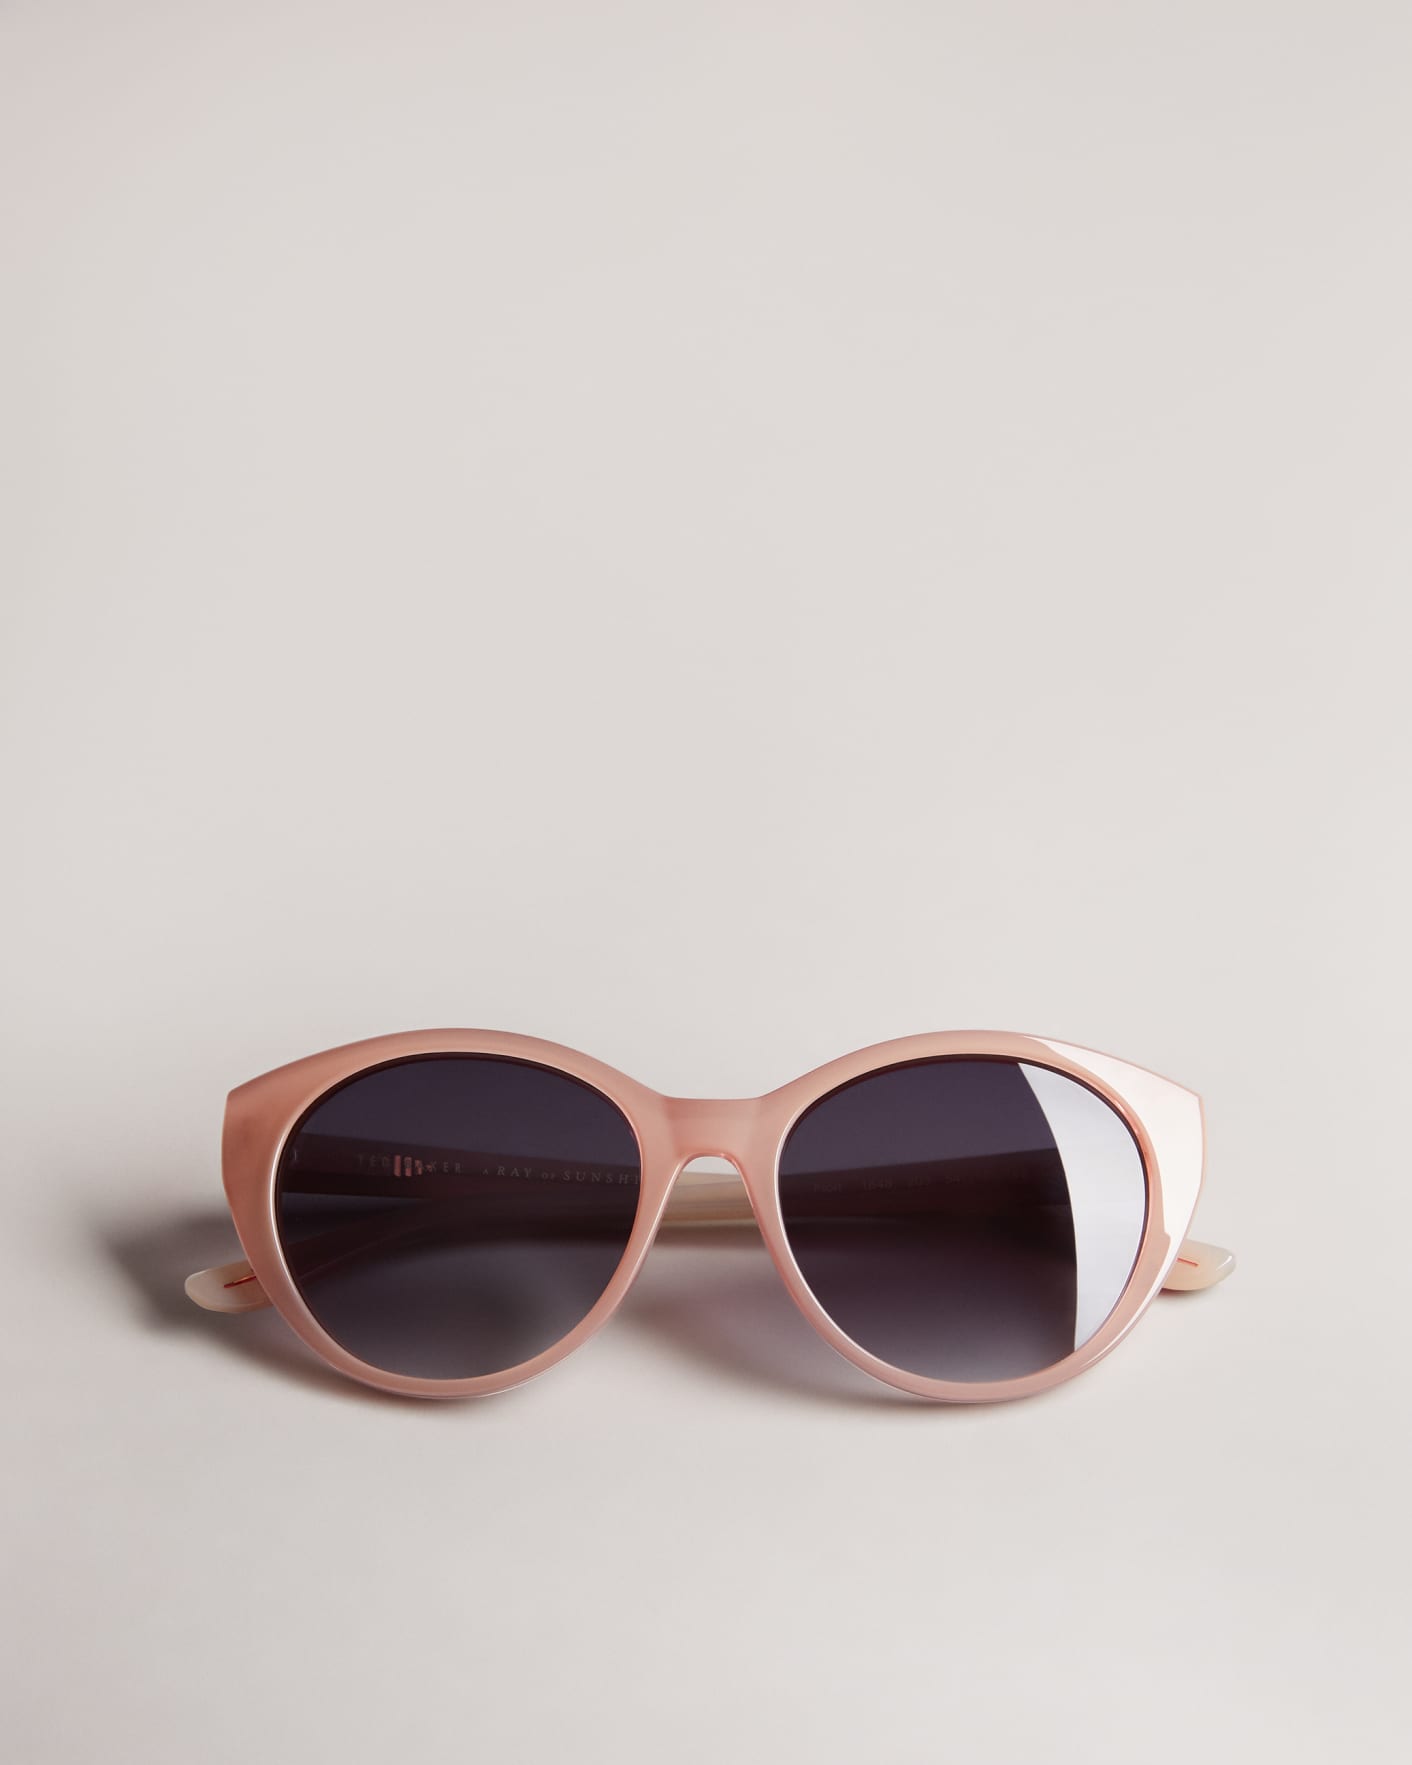 Light Pink Printed Cat Eye Frame Sunglasses Ted Baker